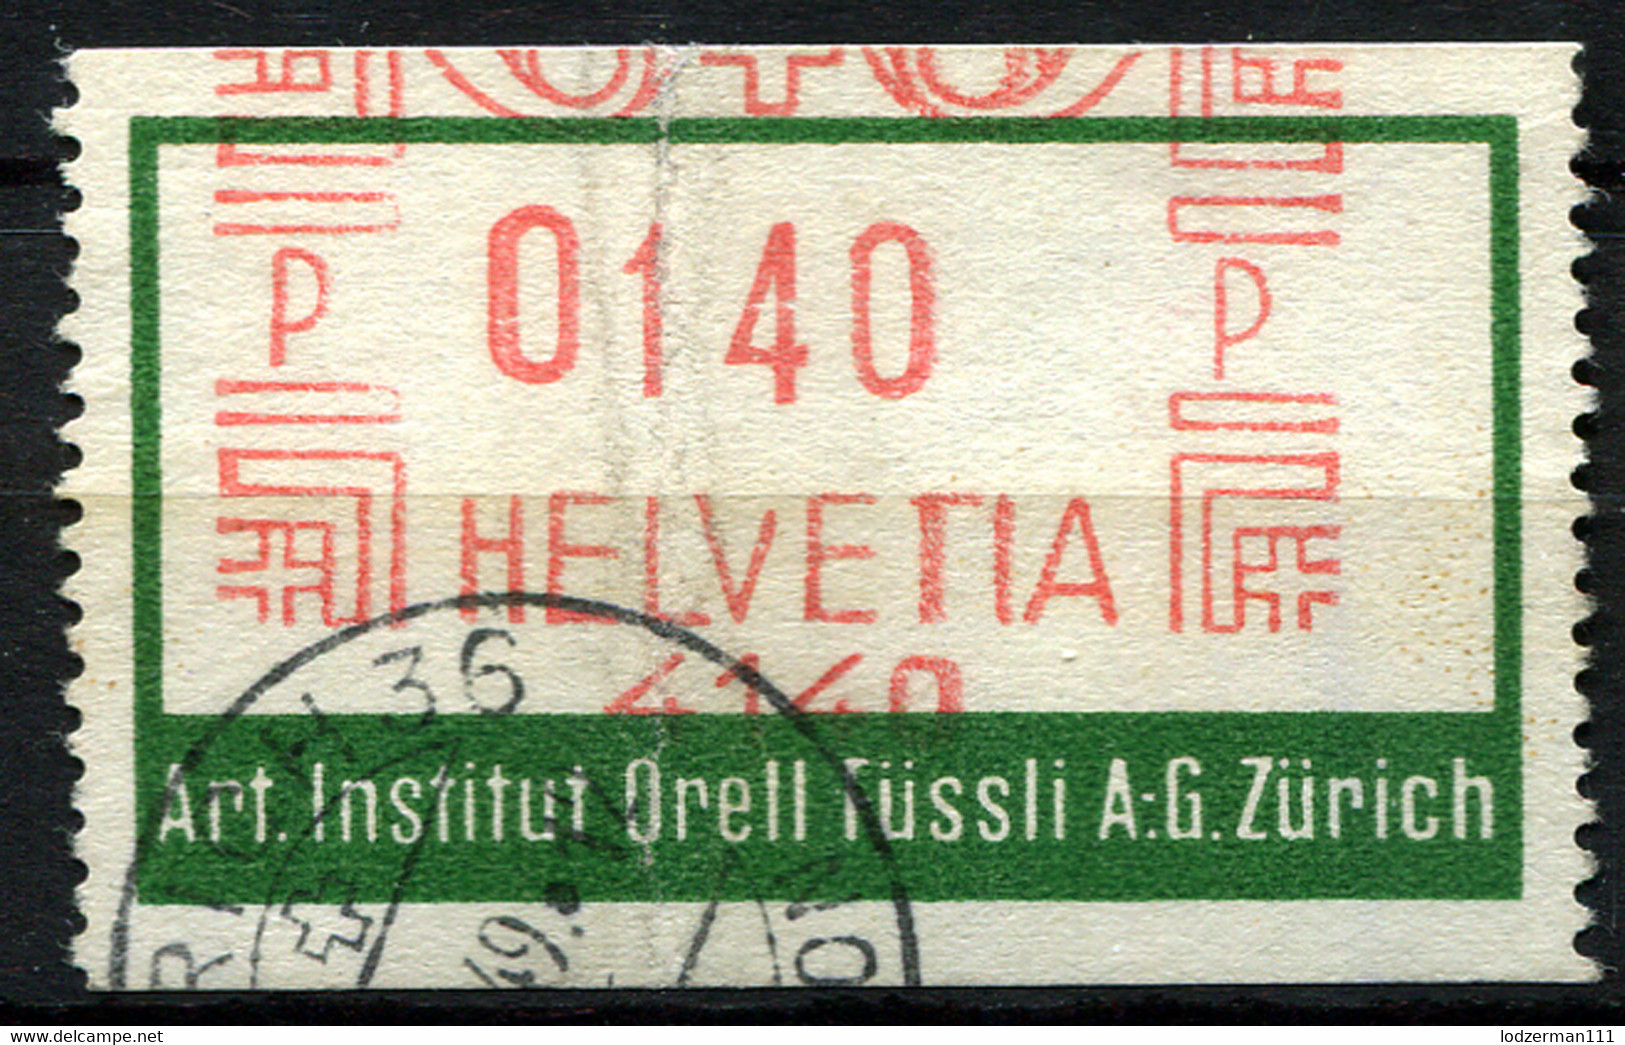 ZURICH 1949 Art. Institut Orell - Machine Meter Stamp - Affranchissements Mécaniques